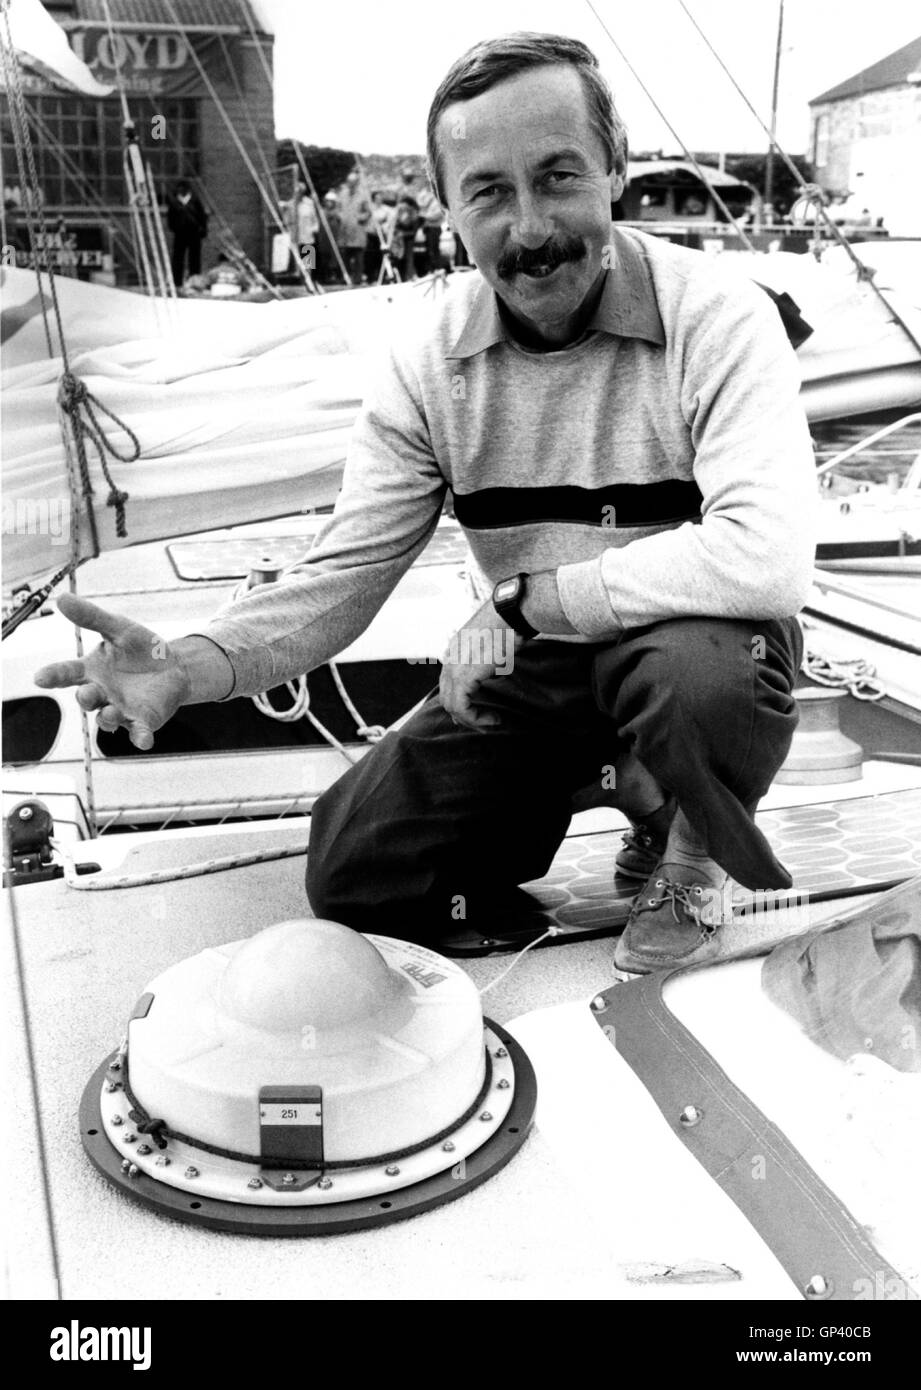 AJAX NEWS FOTO. 1 Giugno, 1984. PLYMOUTH in Inghilterra. - Osservatore/EUROPA 1 gara - Nuovo Zealander JOHN MANSELL di Wellington, spiega il sistema di localizzazione via satellite montato al suo 35 FT catamarano doppio marrone. La SAT-TRACKER manterrà una registrazione giornaliera dei suoi progressi attraverso l'atlantico durante il a mano singola gara. Foto:JONATHAN EASTLAND/AJAX REF:HDD/PEO/Mansell/YAR/TRANSAT 1984 Foto Stock